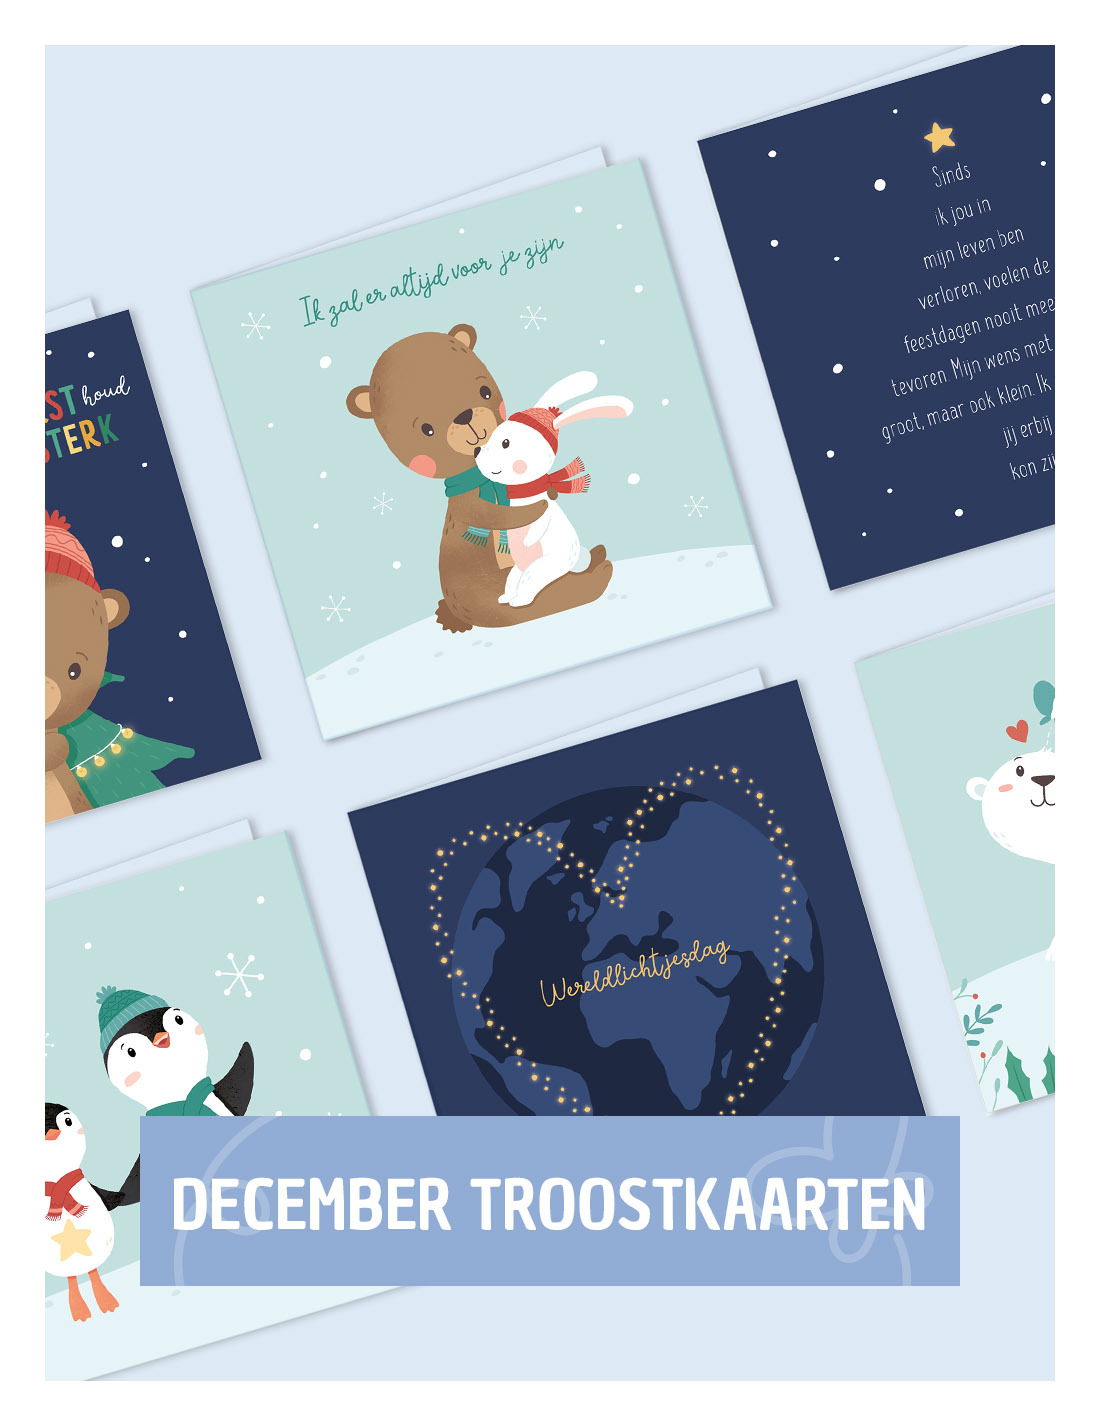 December troostkaarten, kaarten december bij verlies, troostkaart december, troostkaart kerst | Kleine Vlindervoetjes